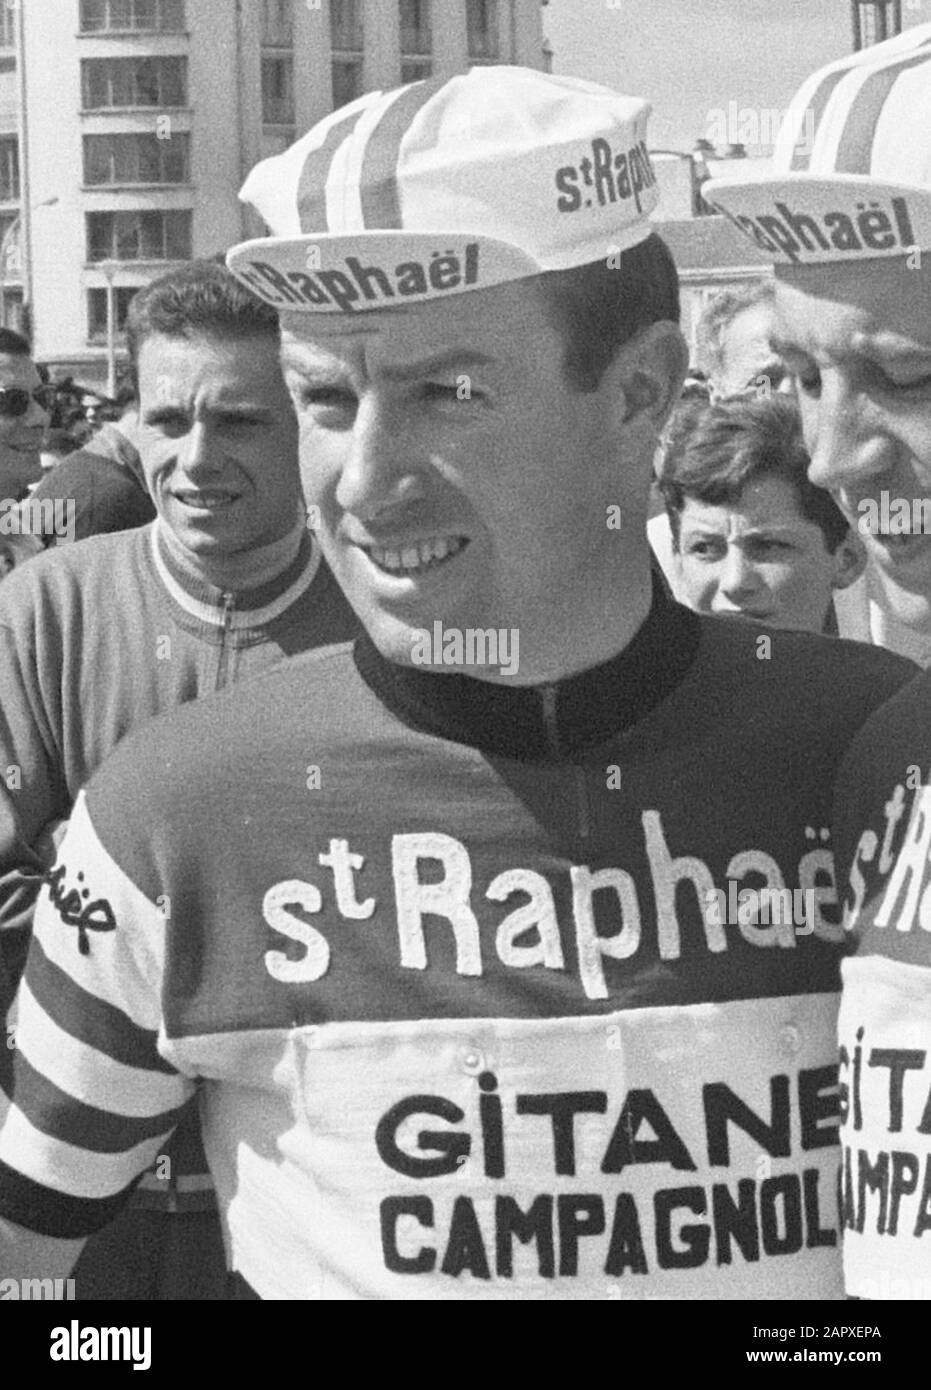 The St. Raphael-Gitanes team flnr: Seamus Elliott Date: 24 June 1964 Stock Photo